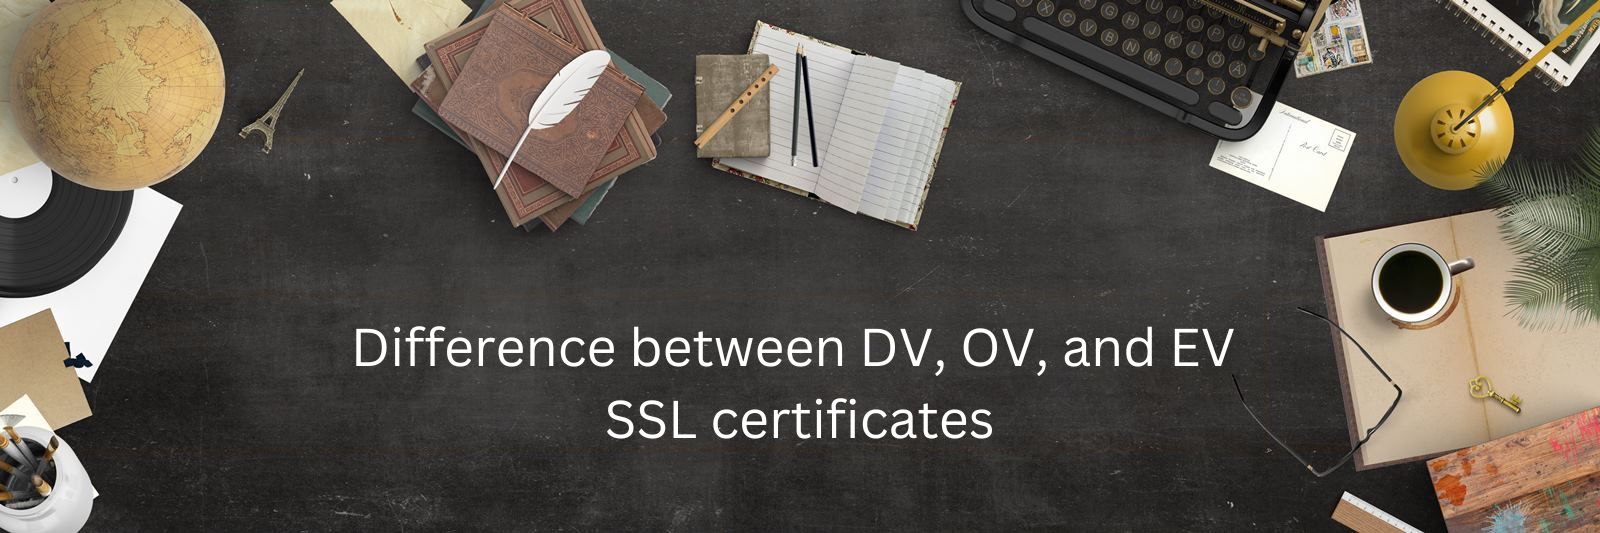 difference between dv ov ev ssl certificate